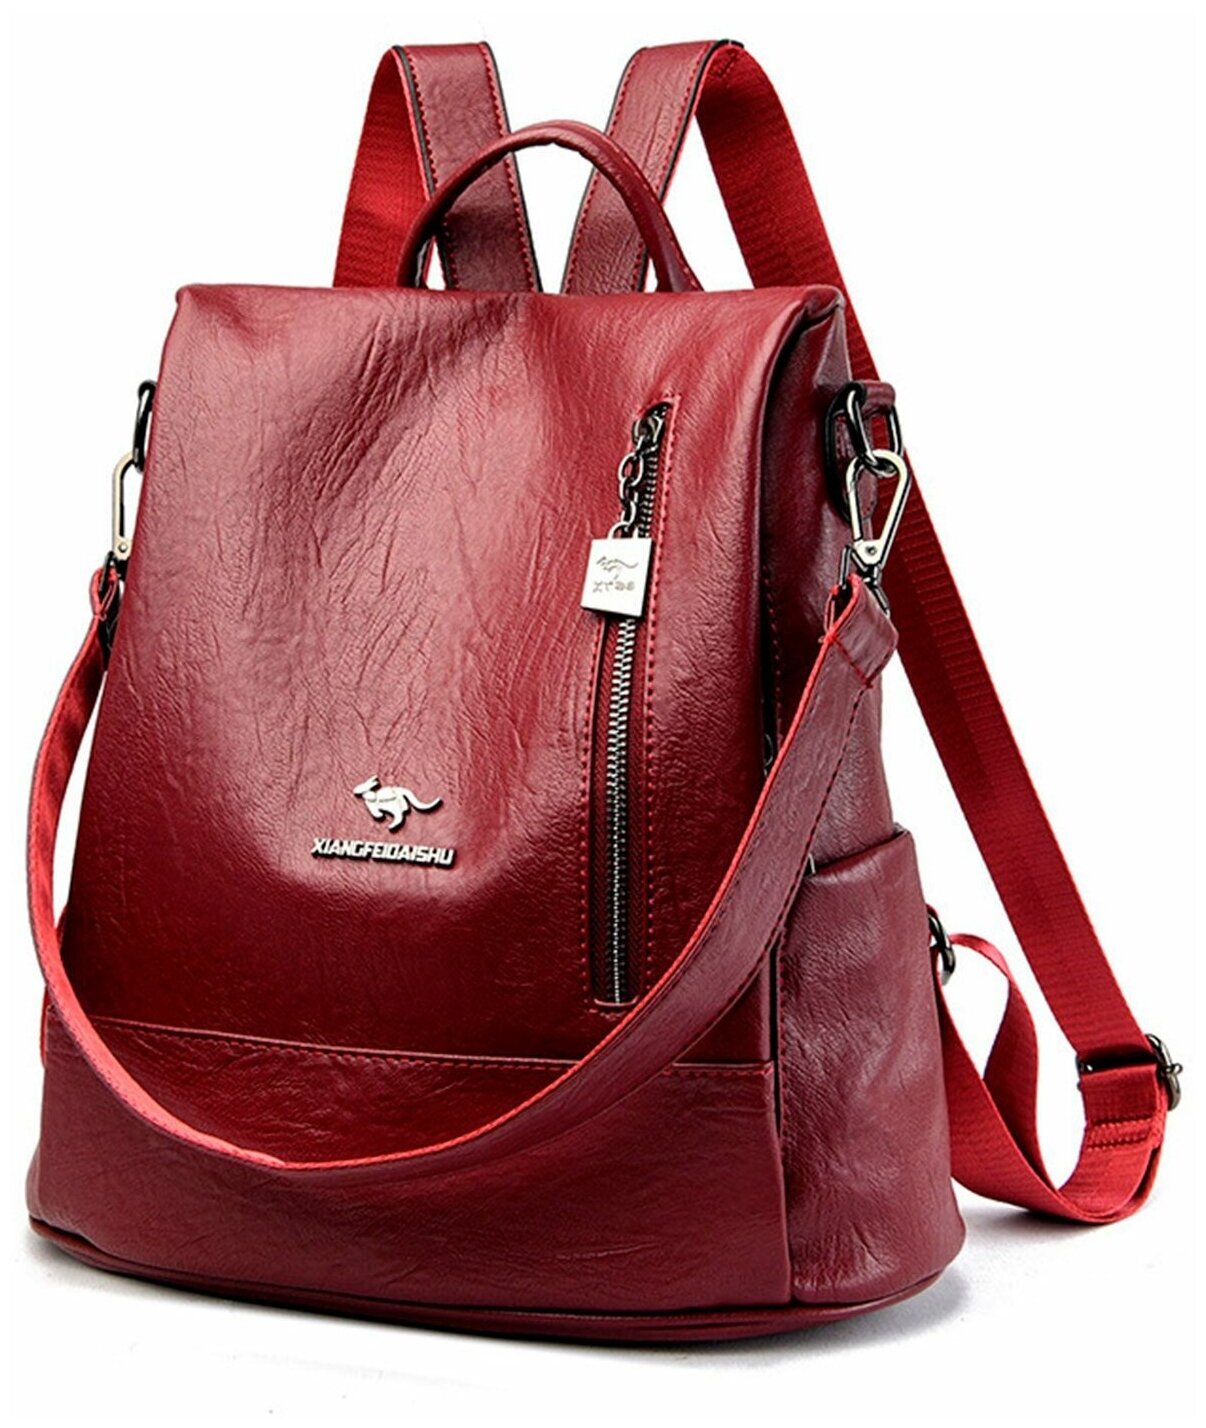 Рюкзак женский бордового цвета, рюкзак бордовый, рюкзак женский, рюкзак женский спортивный, женский городской рюкзак, рюкзак женский